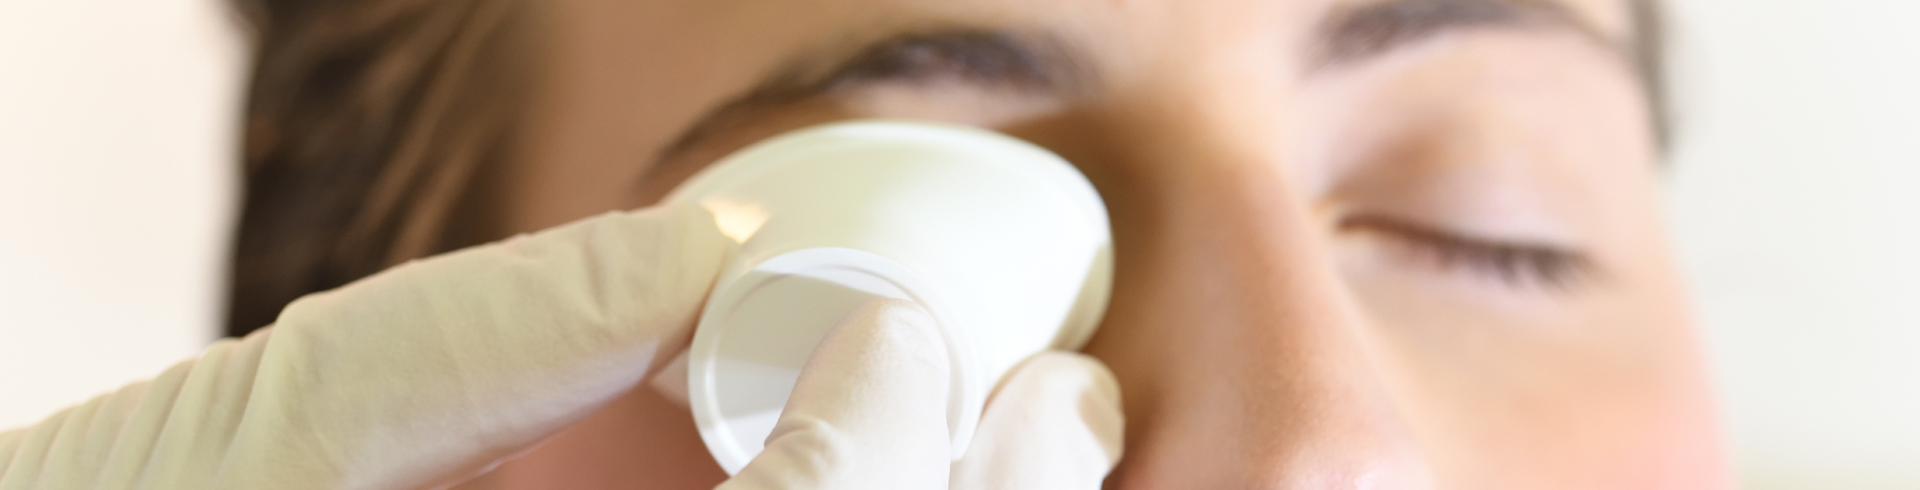 Igiene Oculare prevenzione e cura - ETM CENTRO VISIONE